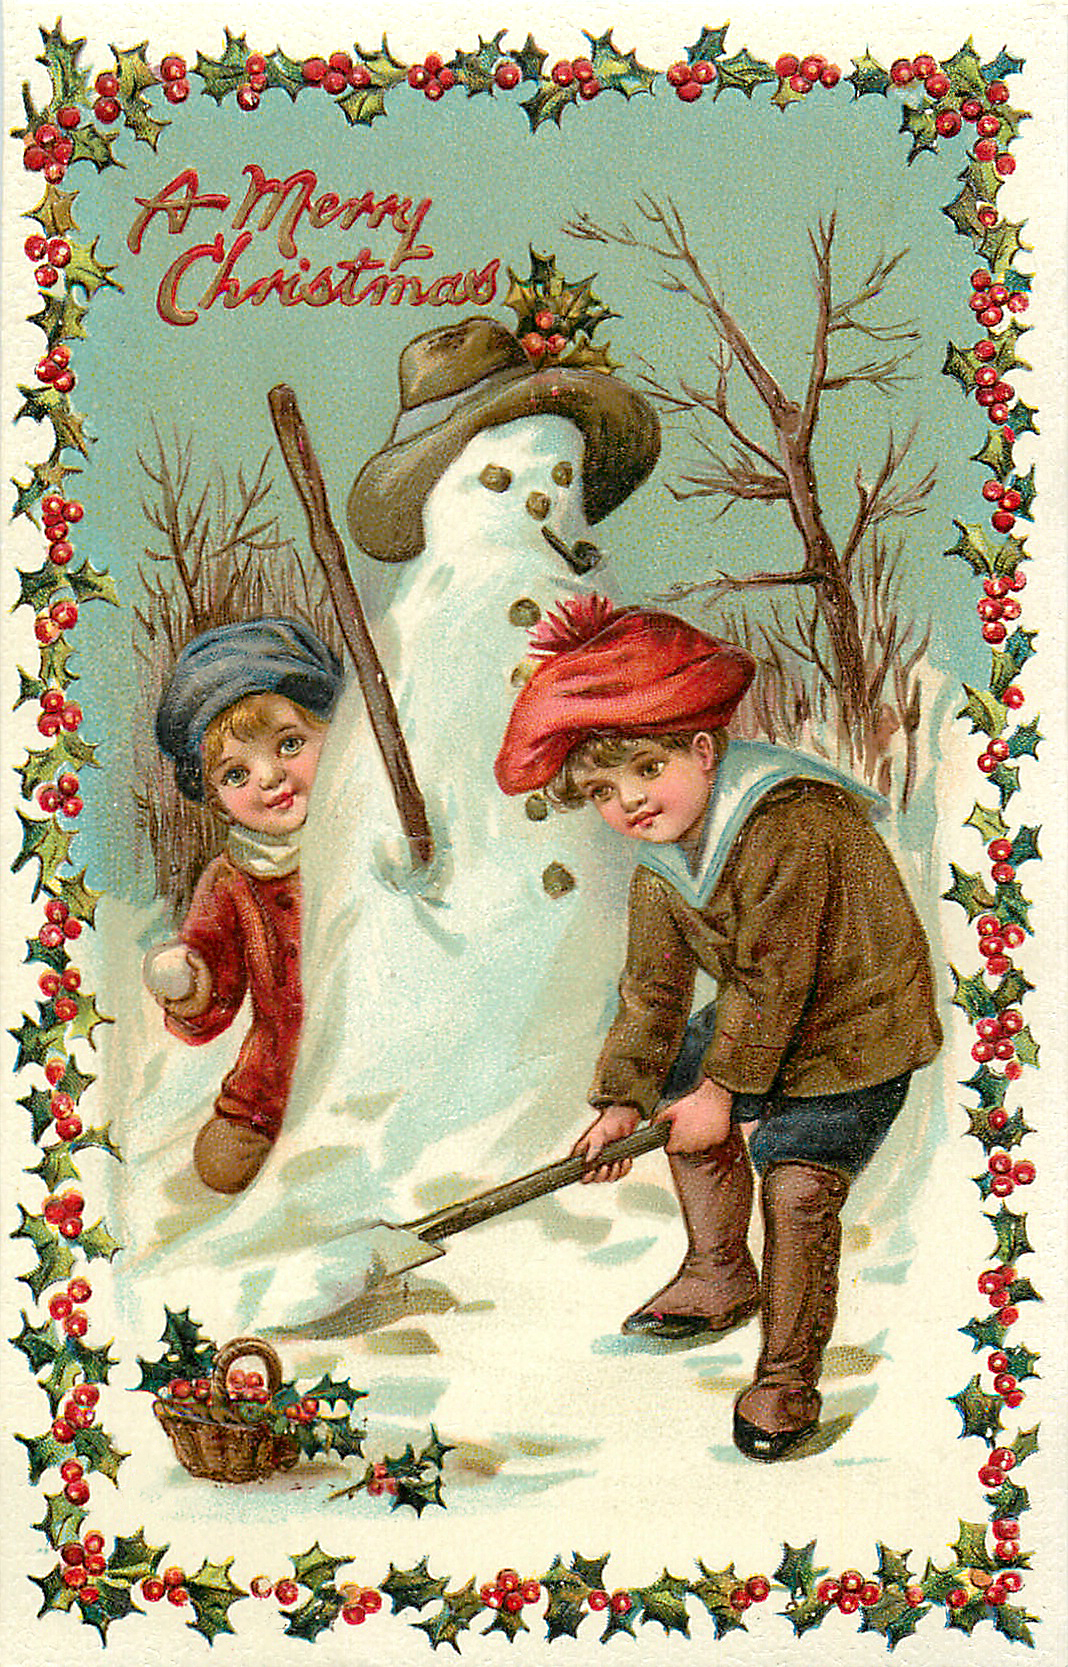 Christmas Boys Snowman Image